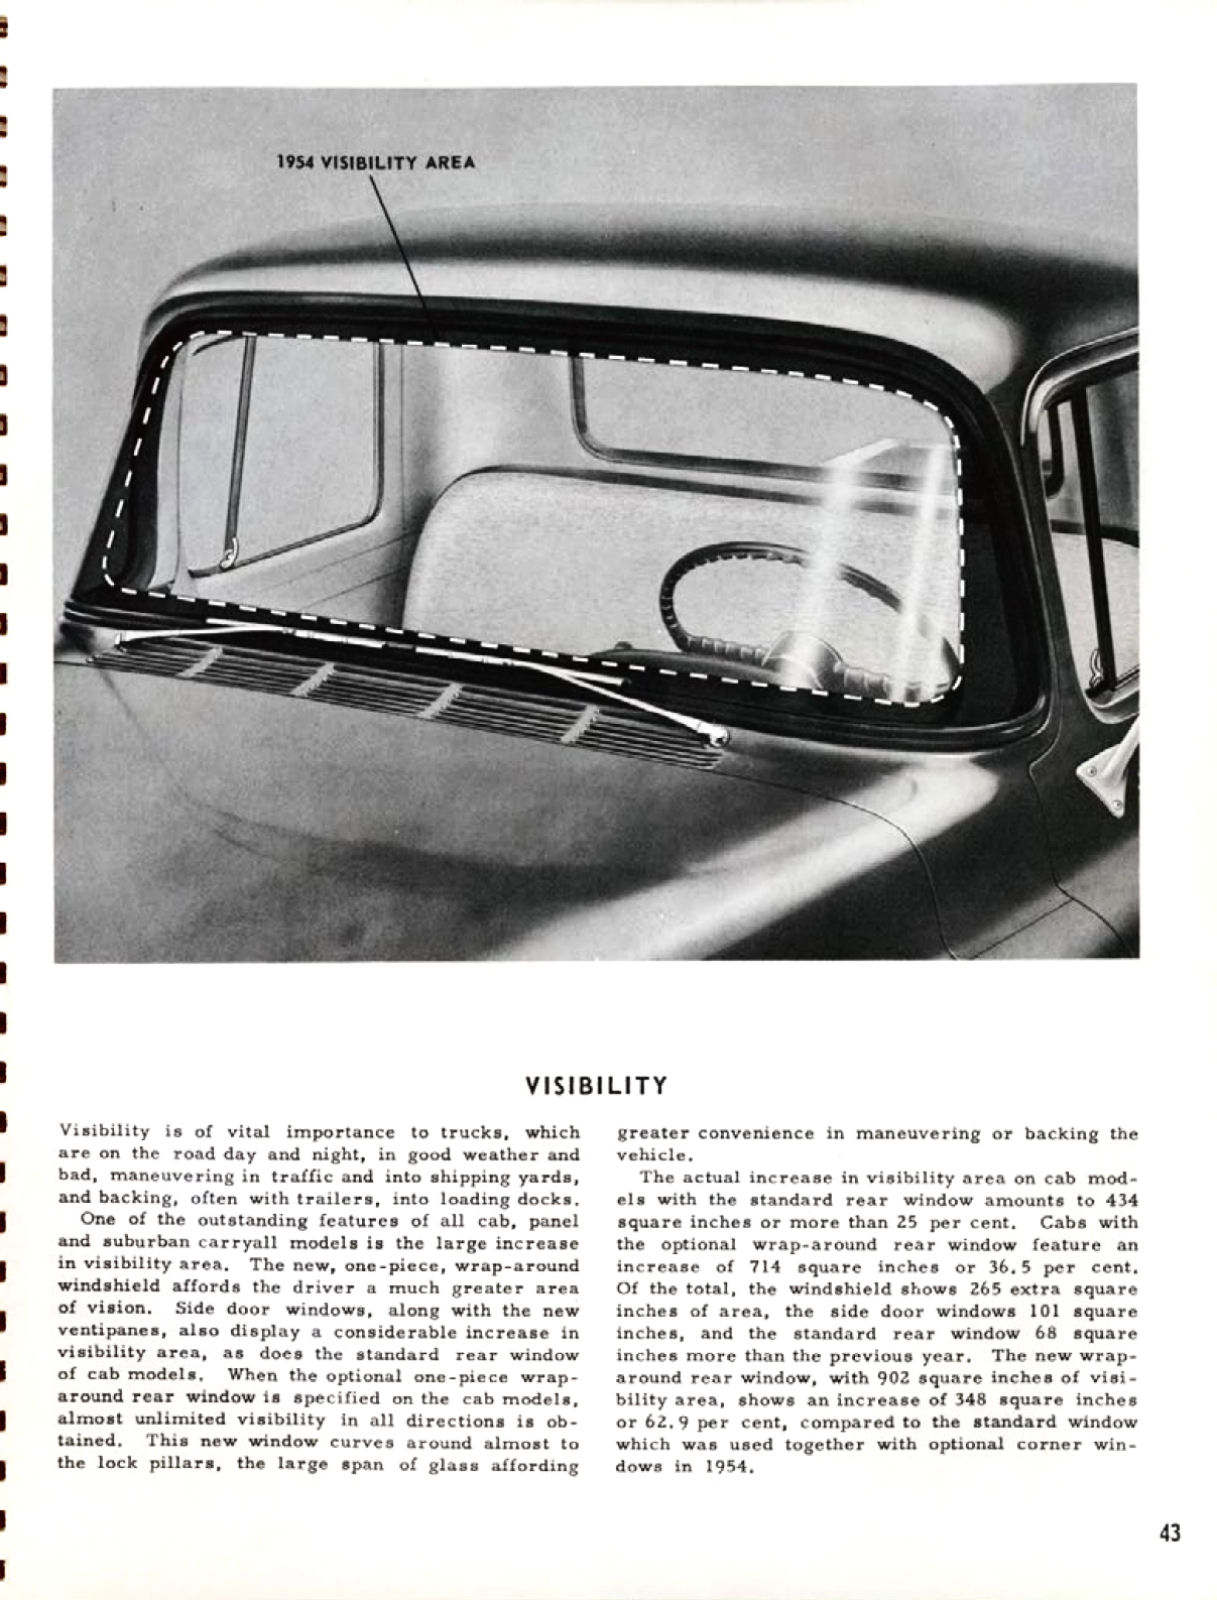 1955_Chevrolet_Truck_Engineering_Features-043